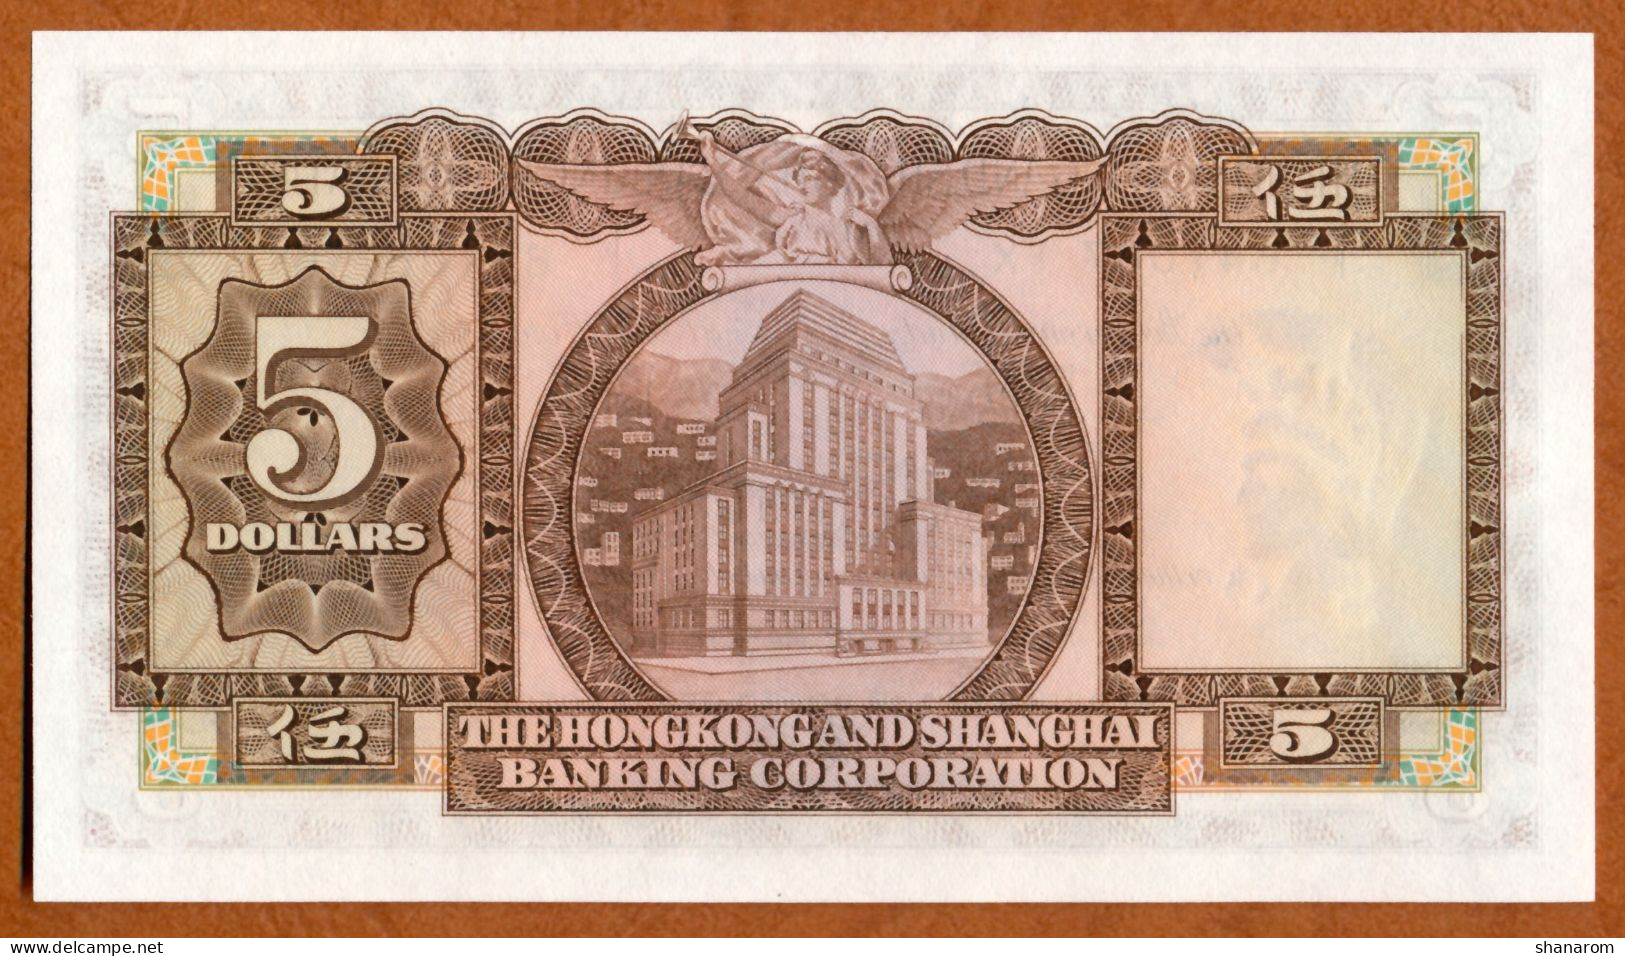 1975 // THE HONGKONG AND SHANGHAI BANKING CORPORATION // FIVE DOLLARS // UNC // NEUF - Hongkong